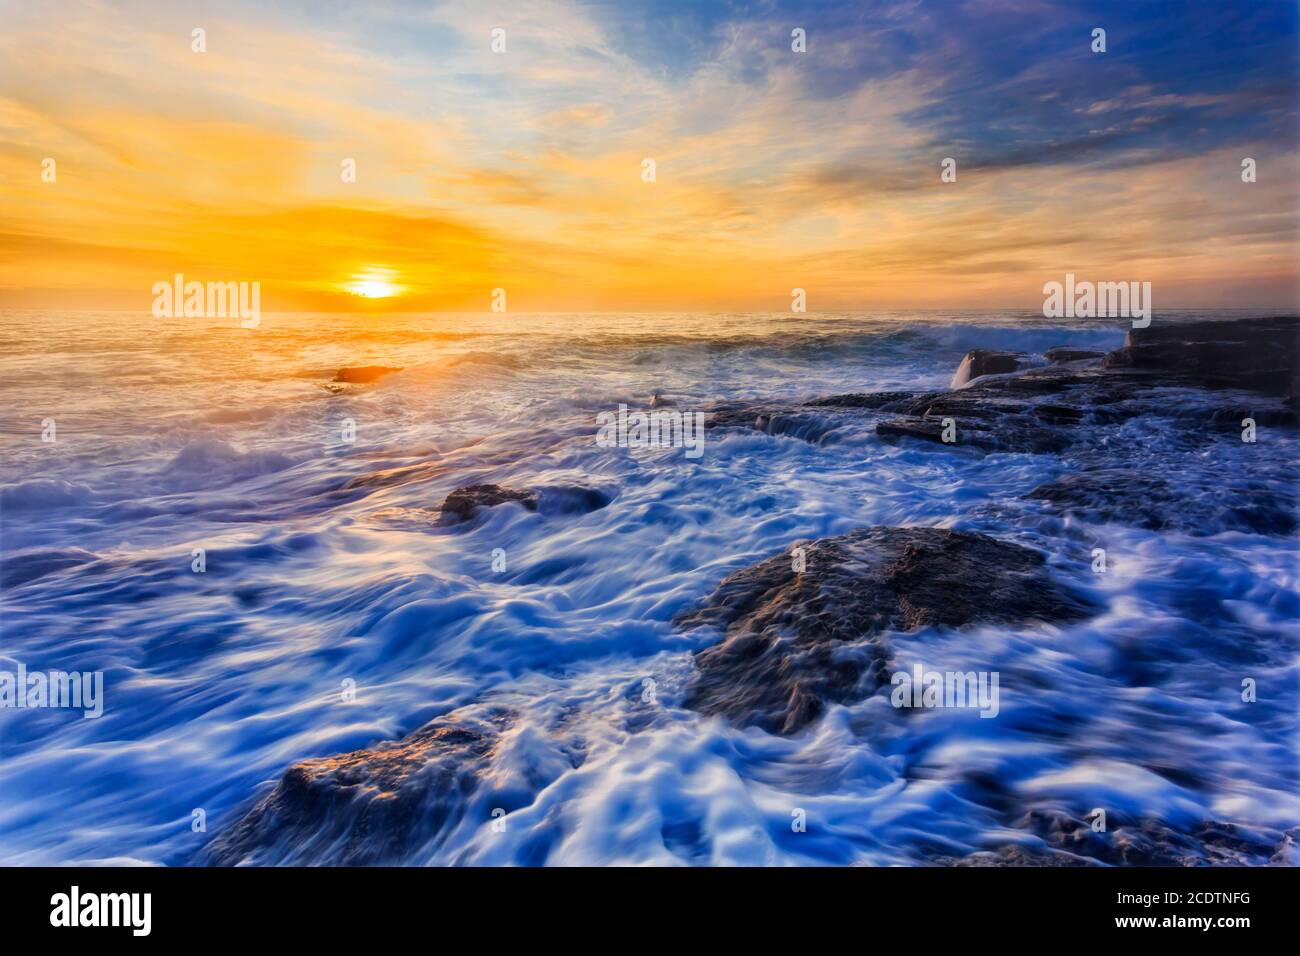 Mare dell'alba dell'oceano Pacifico alle spiagge del nord di Sydney in tempo tempestoso con onde e surf su rocce di arenaria. Foto Stock